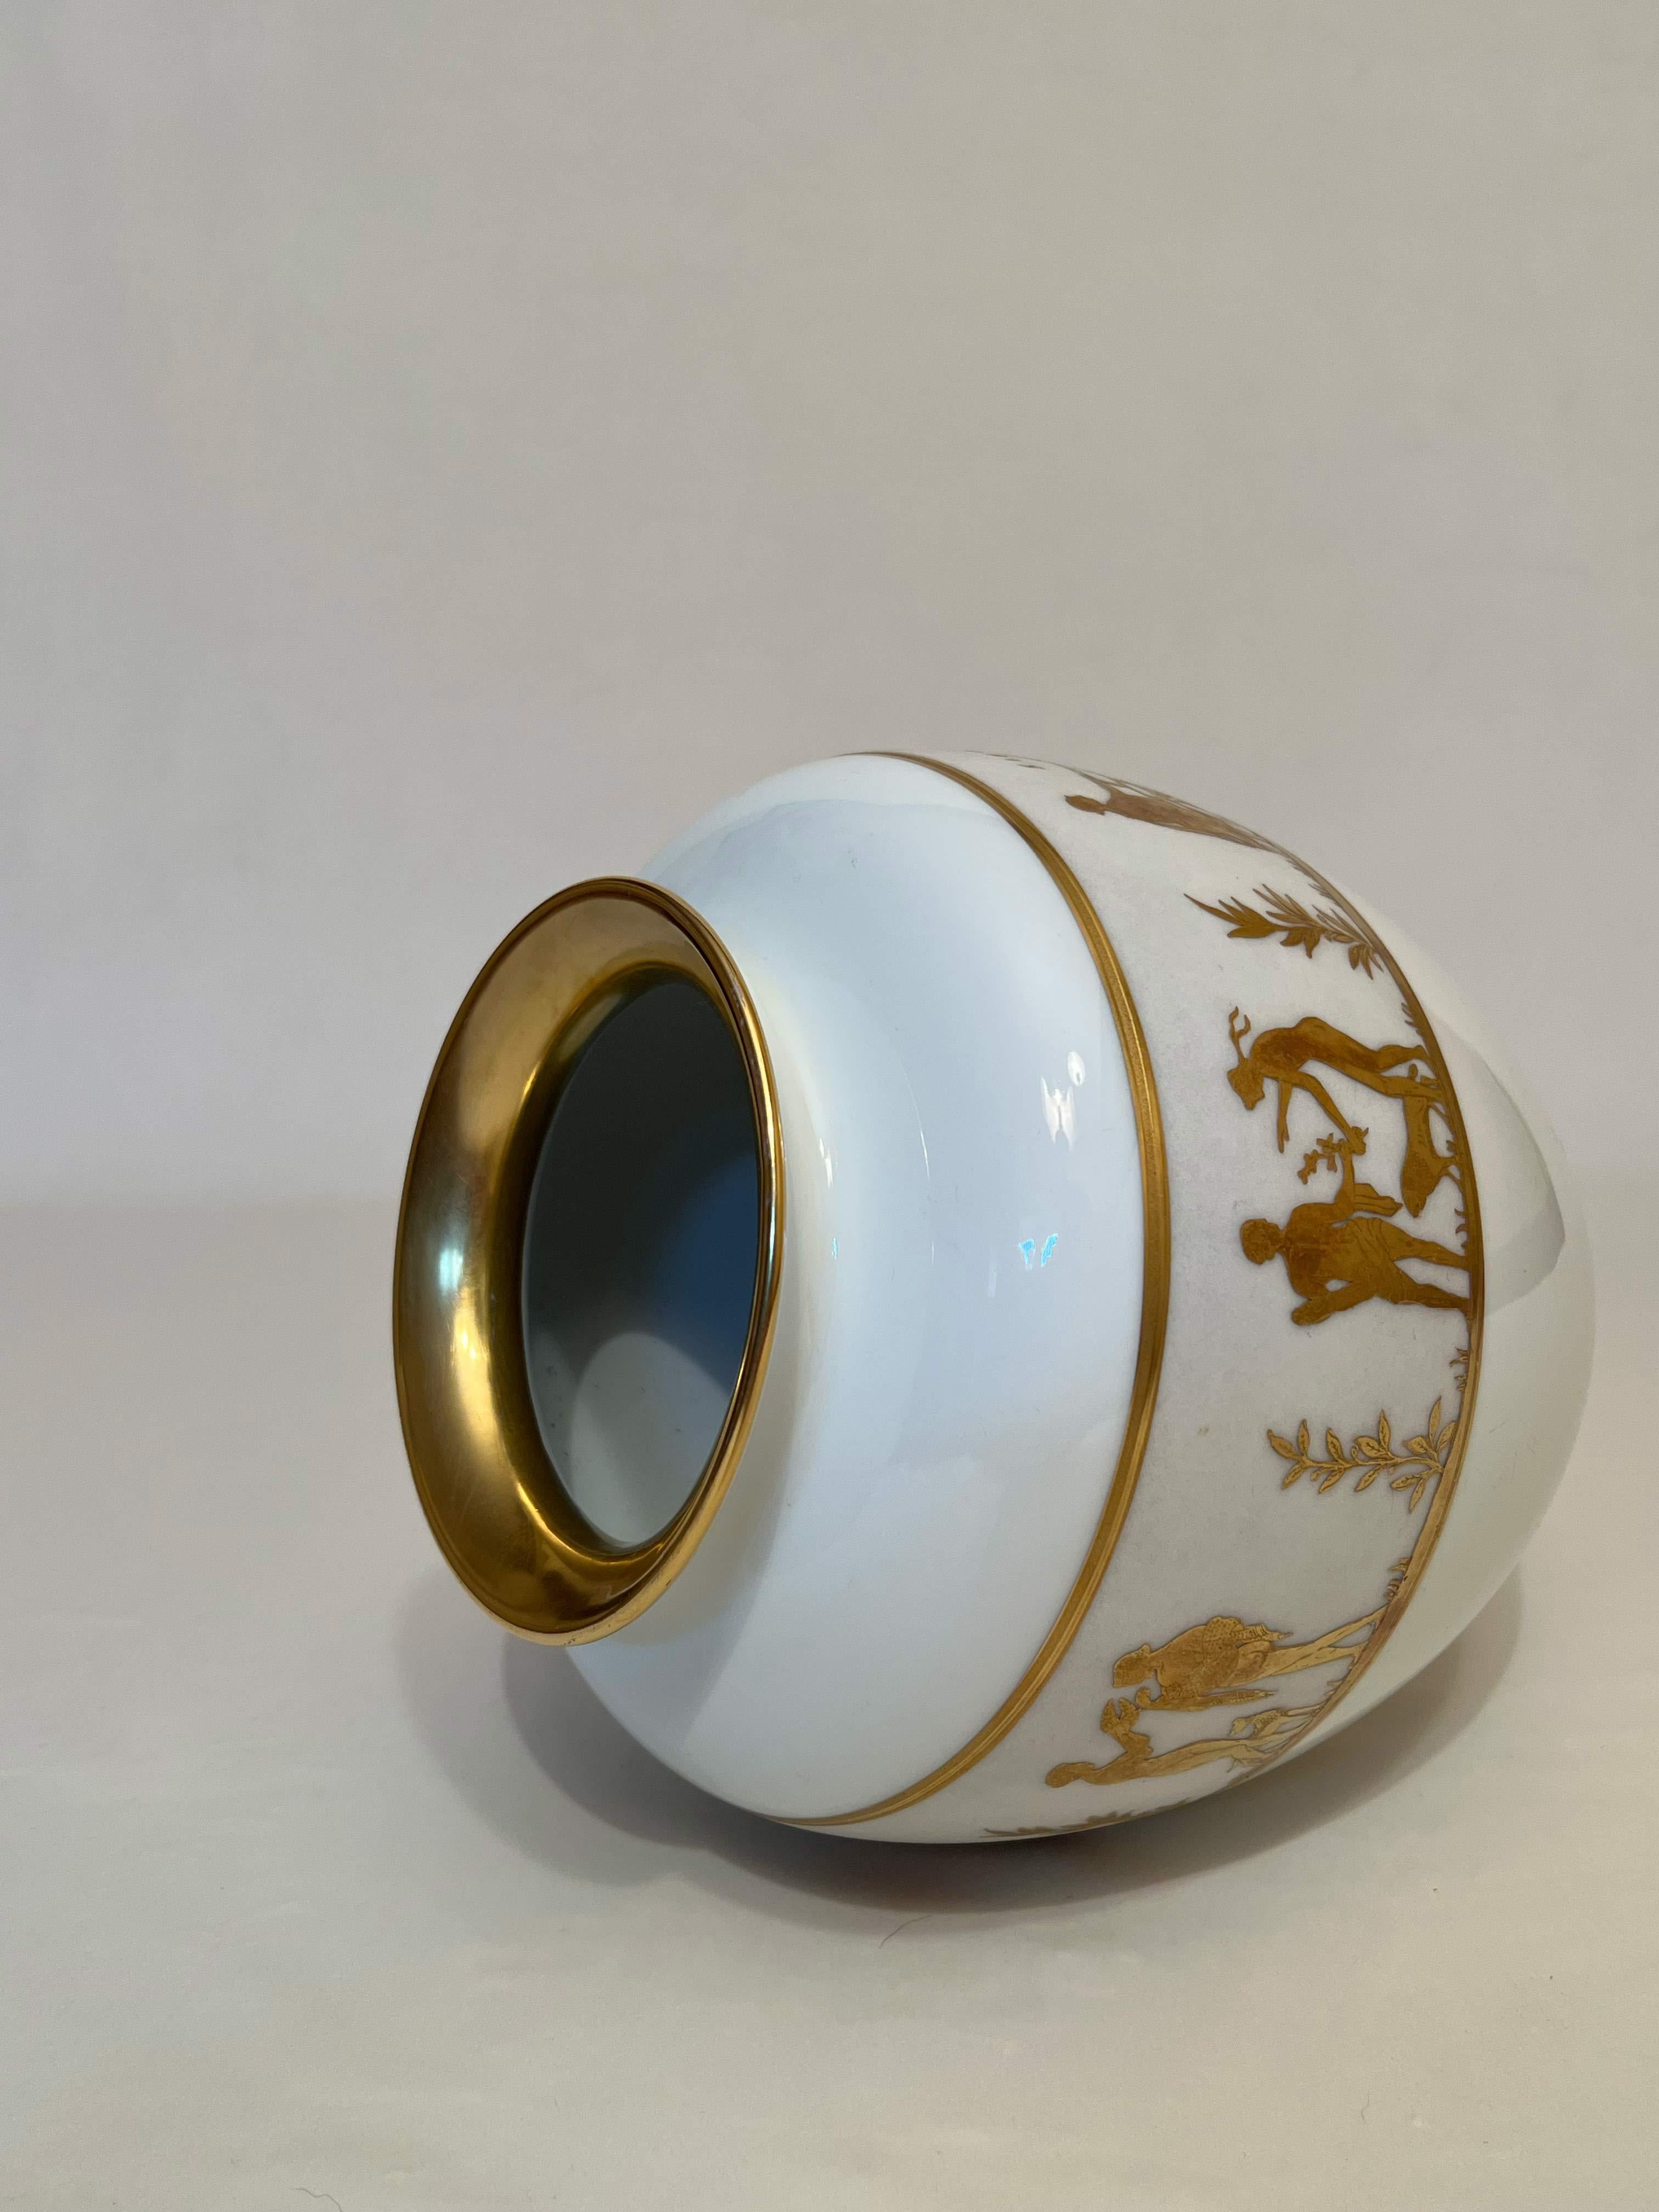 neofitou keramik vase 24k gold